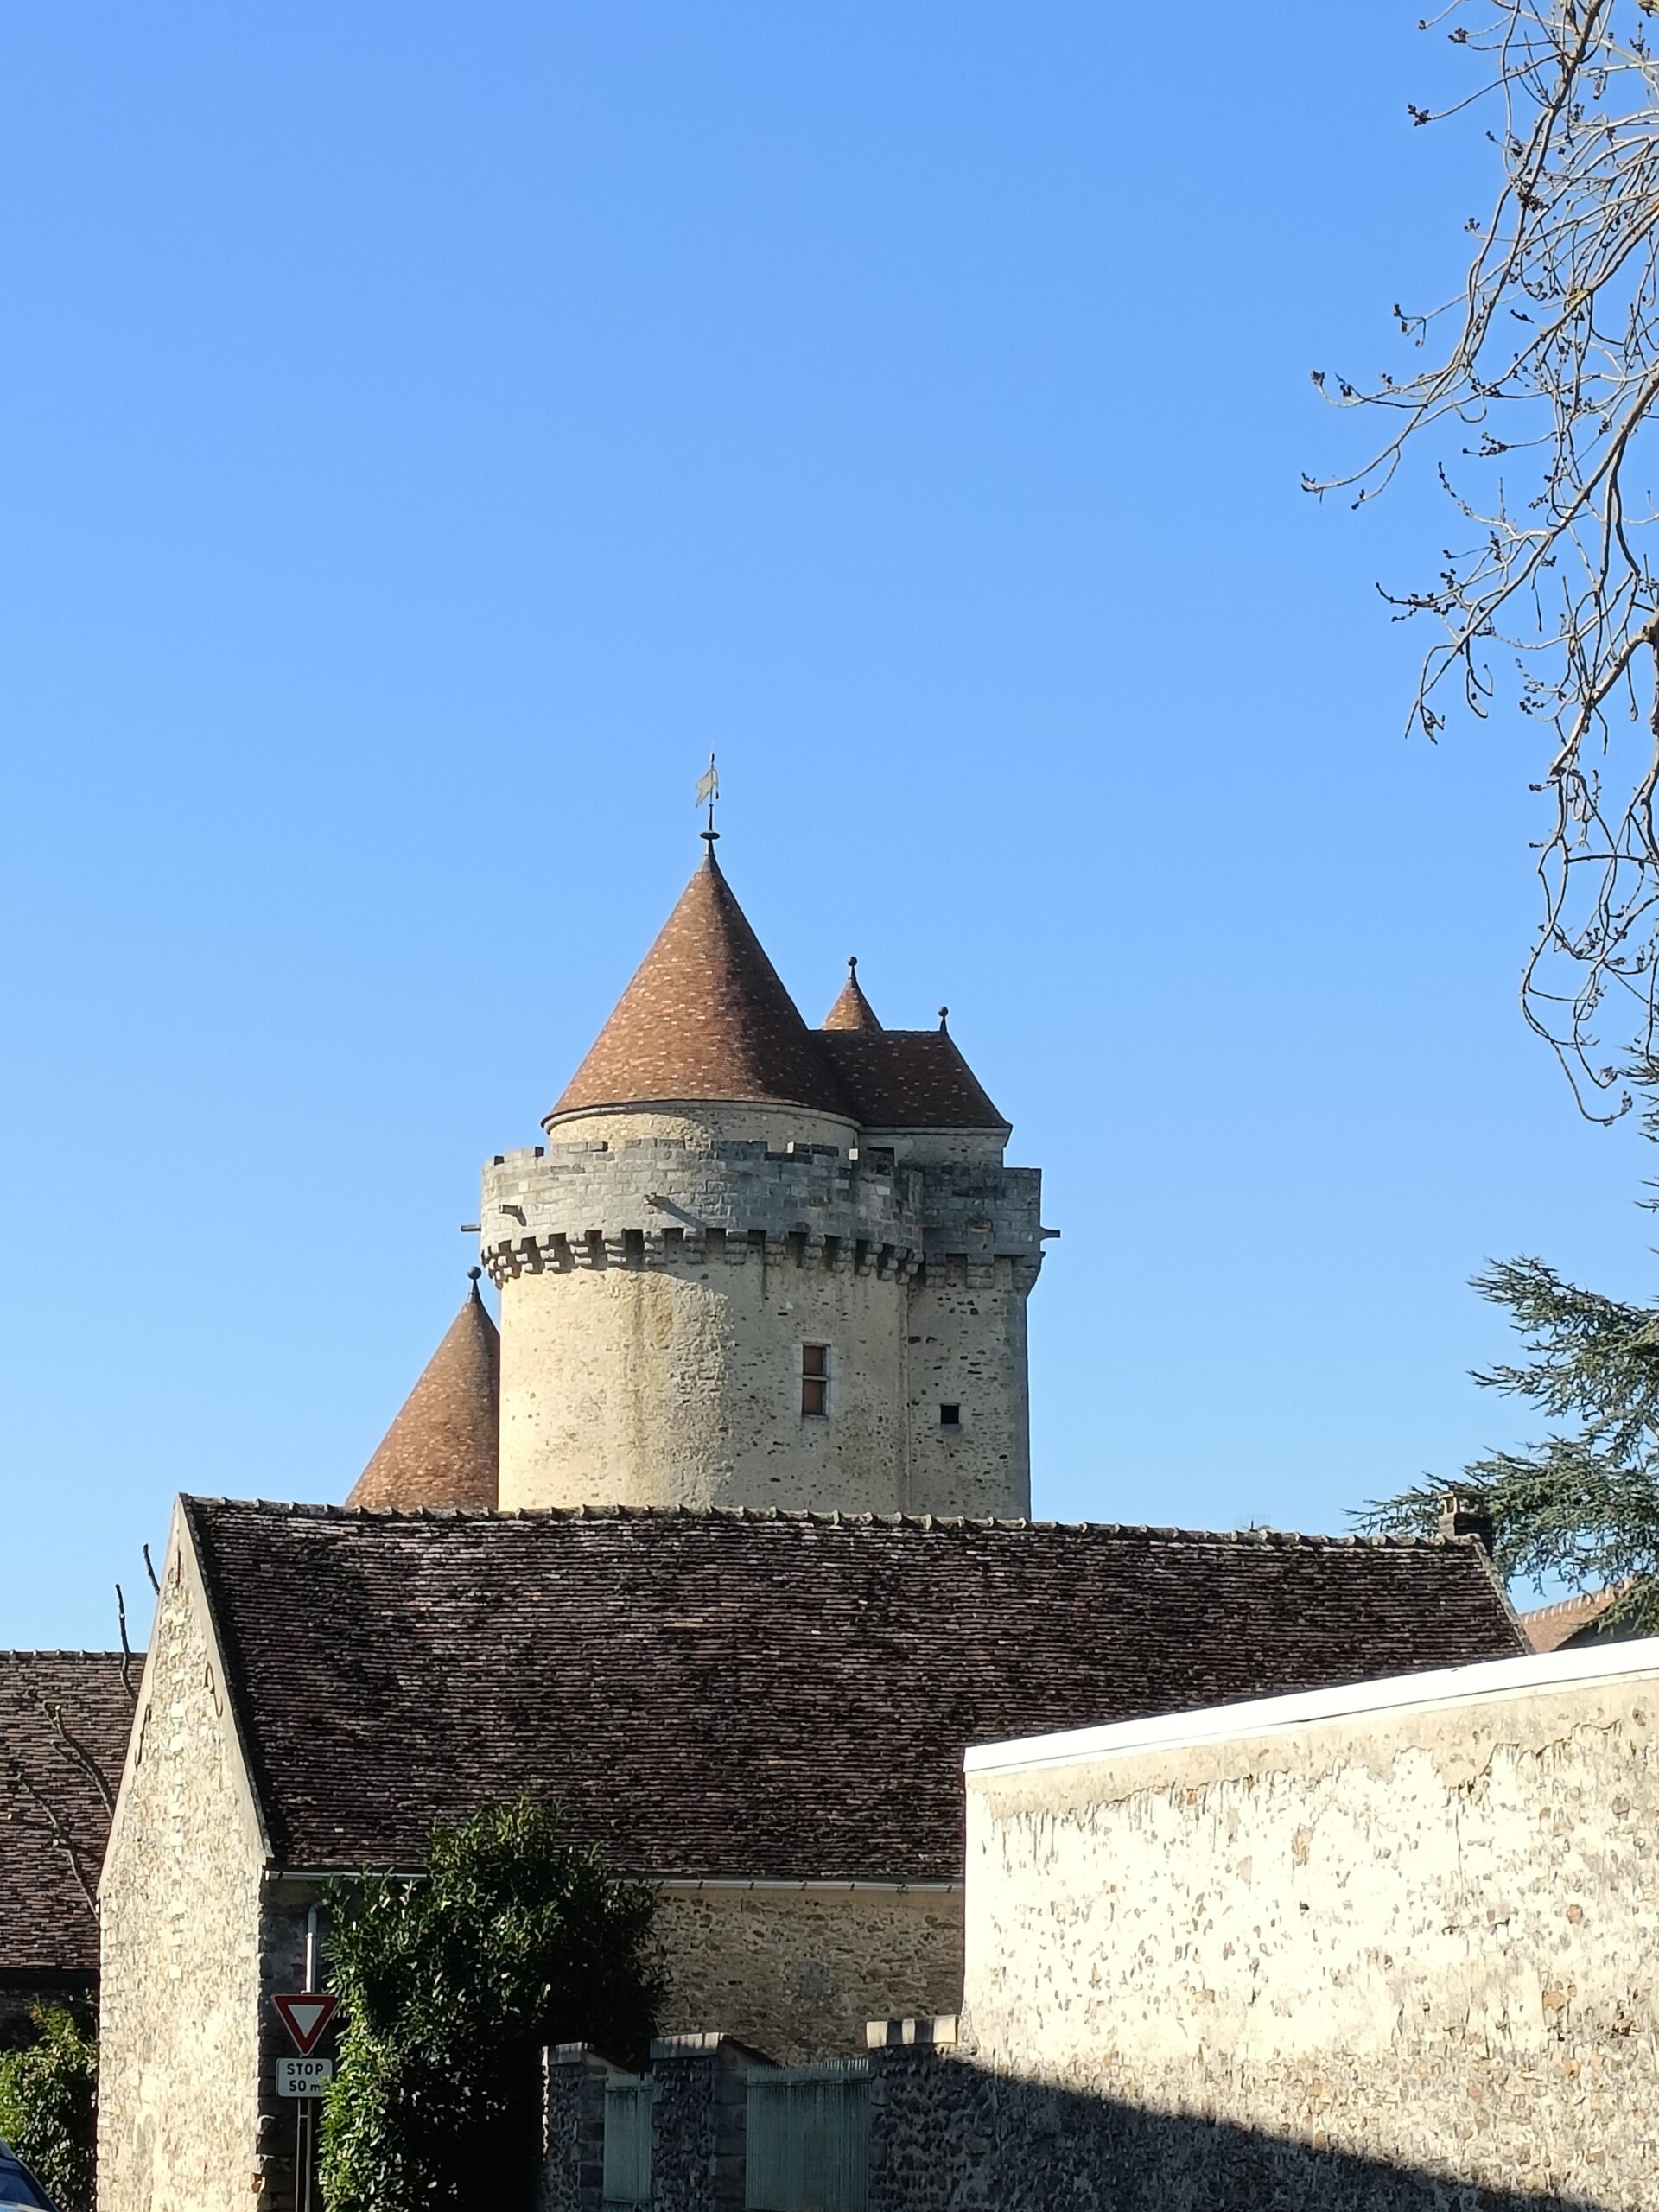 Château de blandy les tours